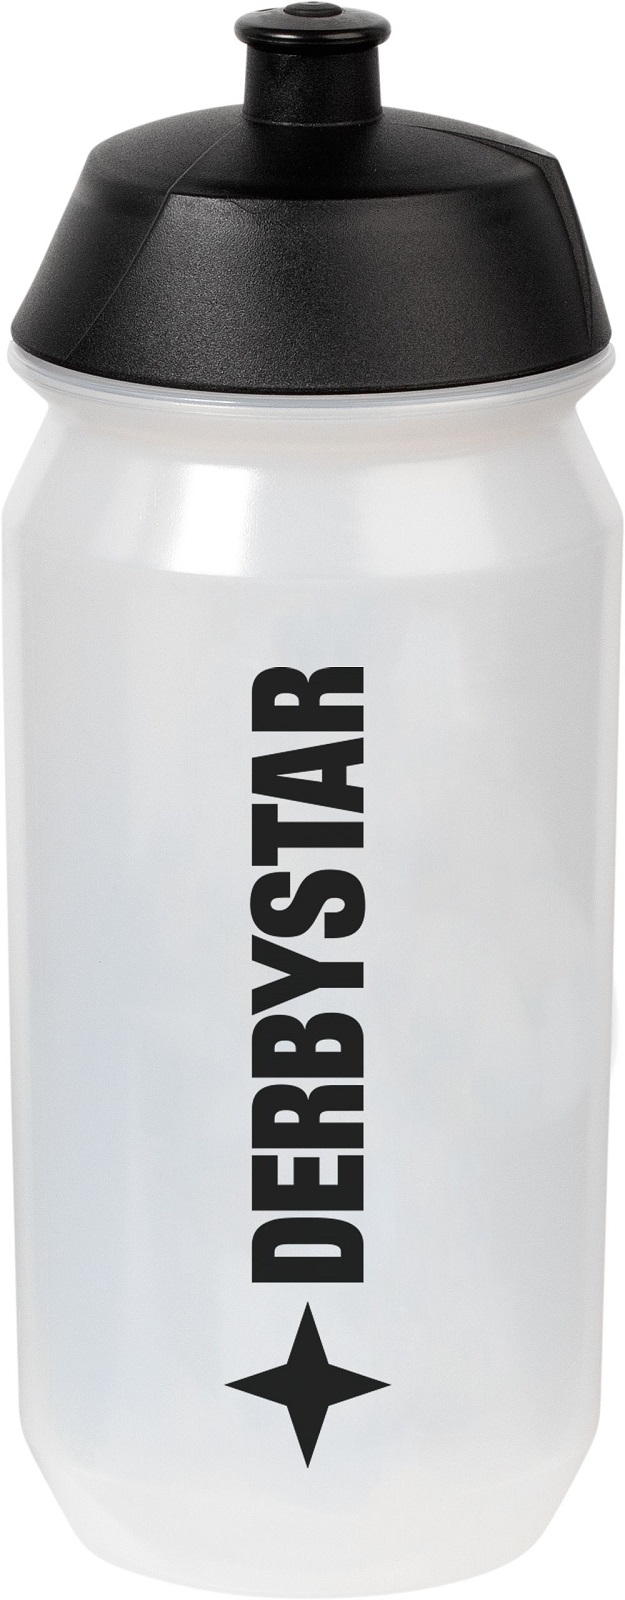 Derbystar Trinkflasche Bio-Bottle 0,7l